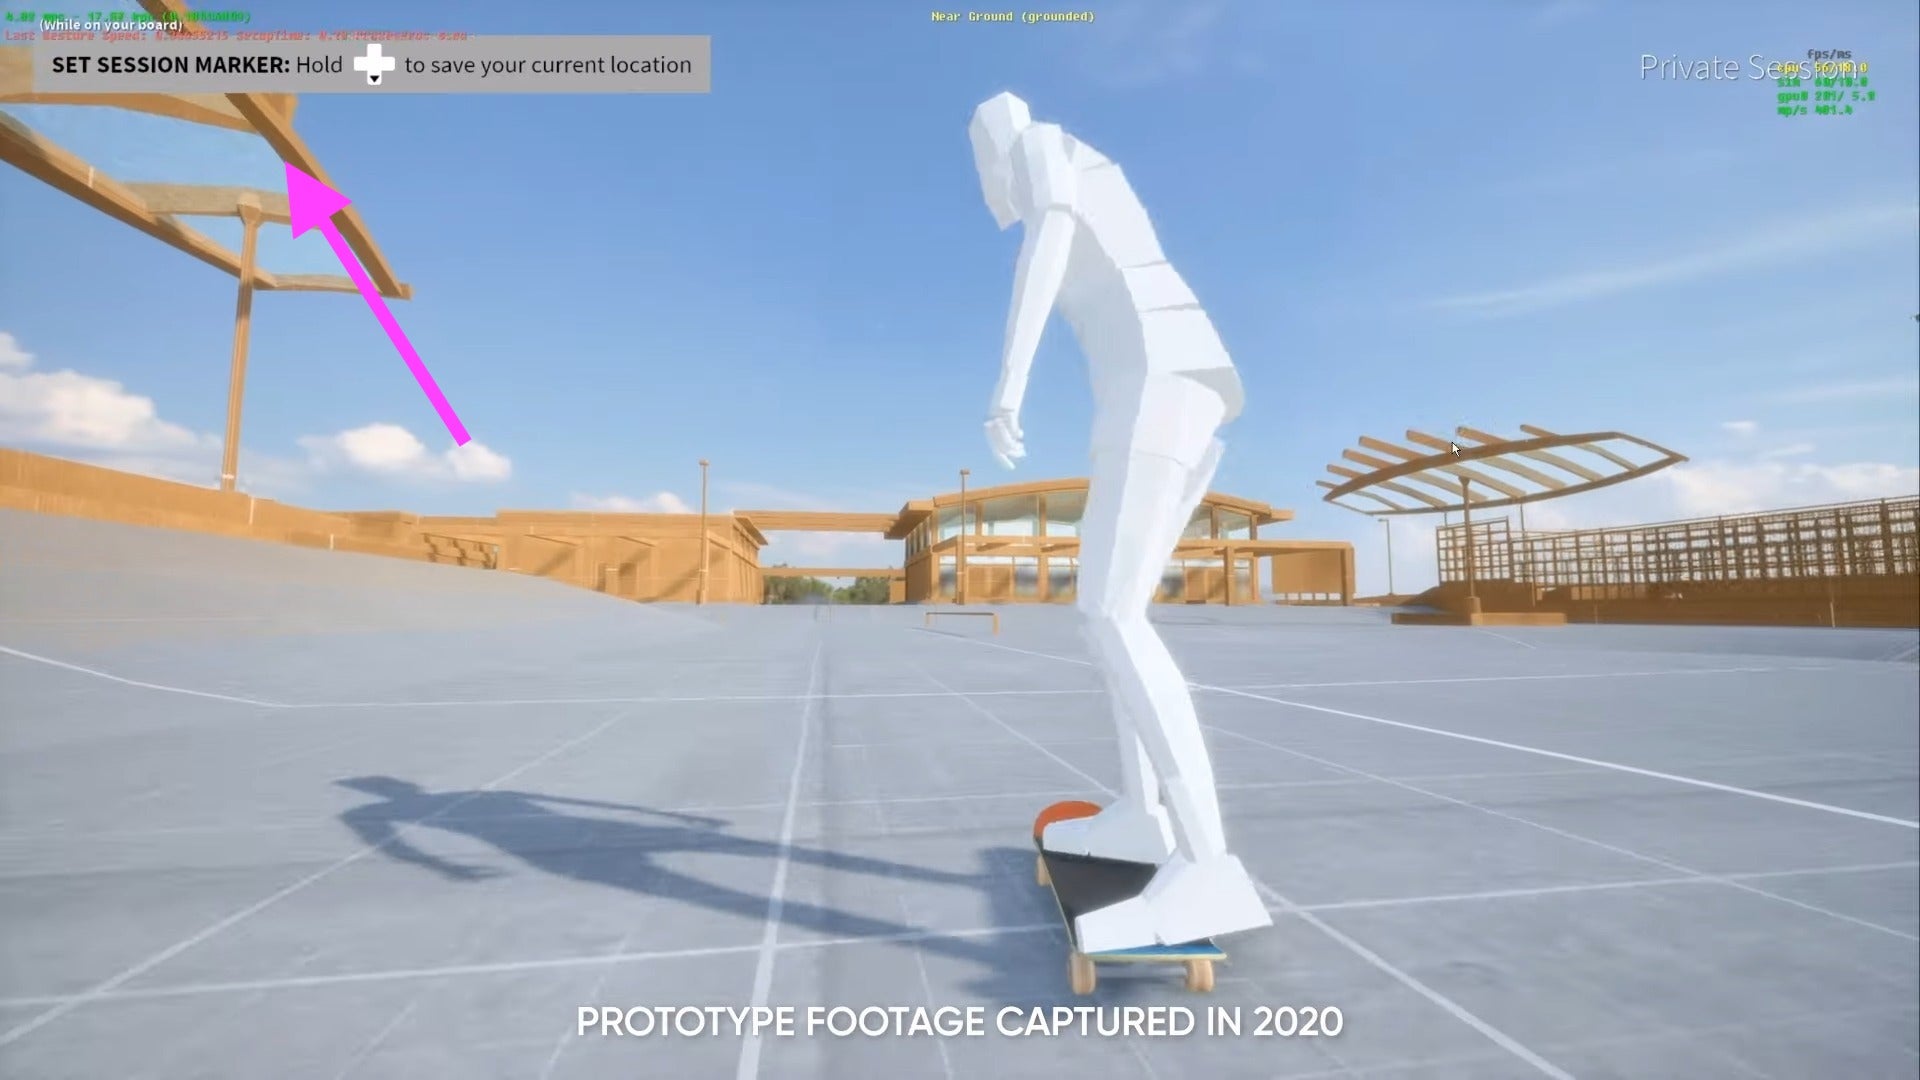 Skate 4: supostos vídeos de gameplay aparecem na internet